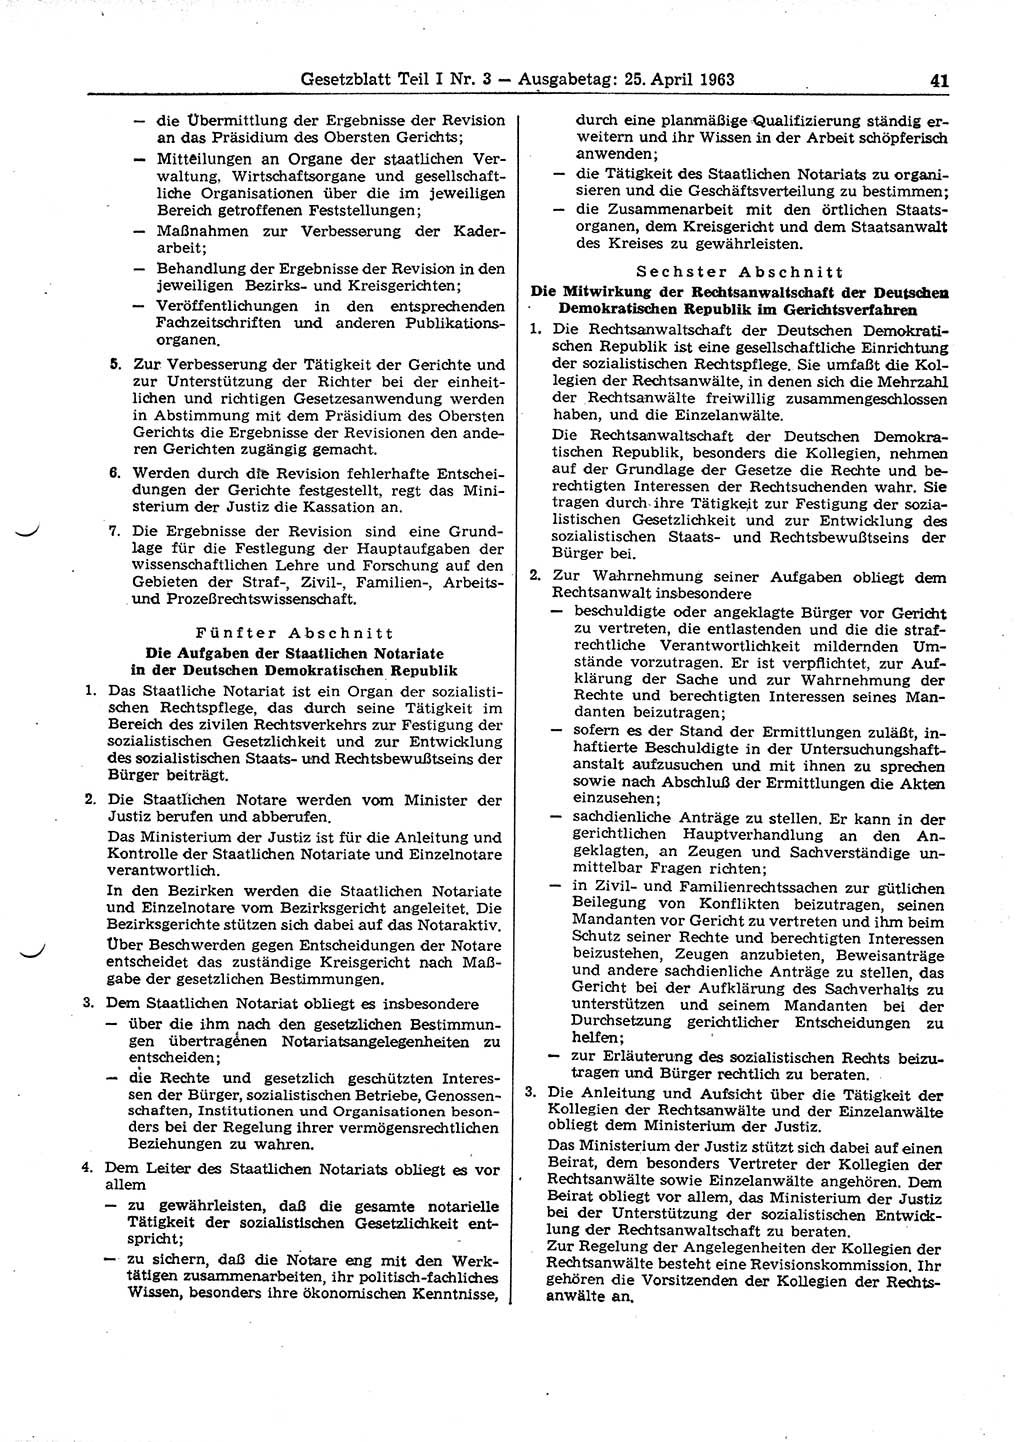 Gesetzblatt (GBl.) der Deutschen Demokratischen Republik (DDR) Teil Ⅰ 1963, Seite 41 (GBl. DDR Ⅰ 1963, S. 41)